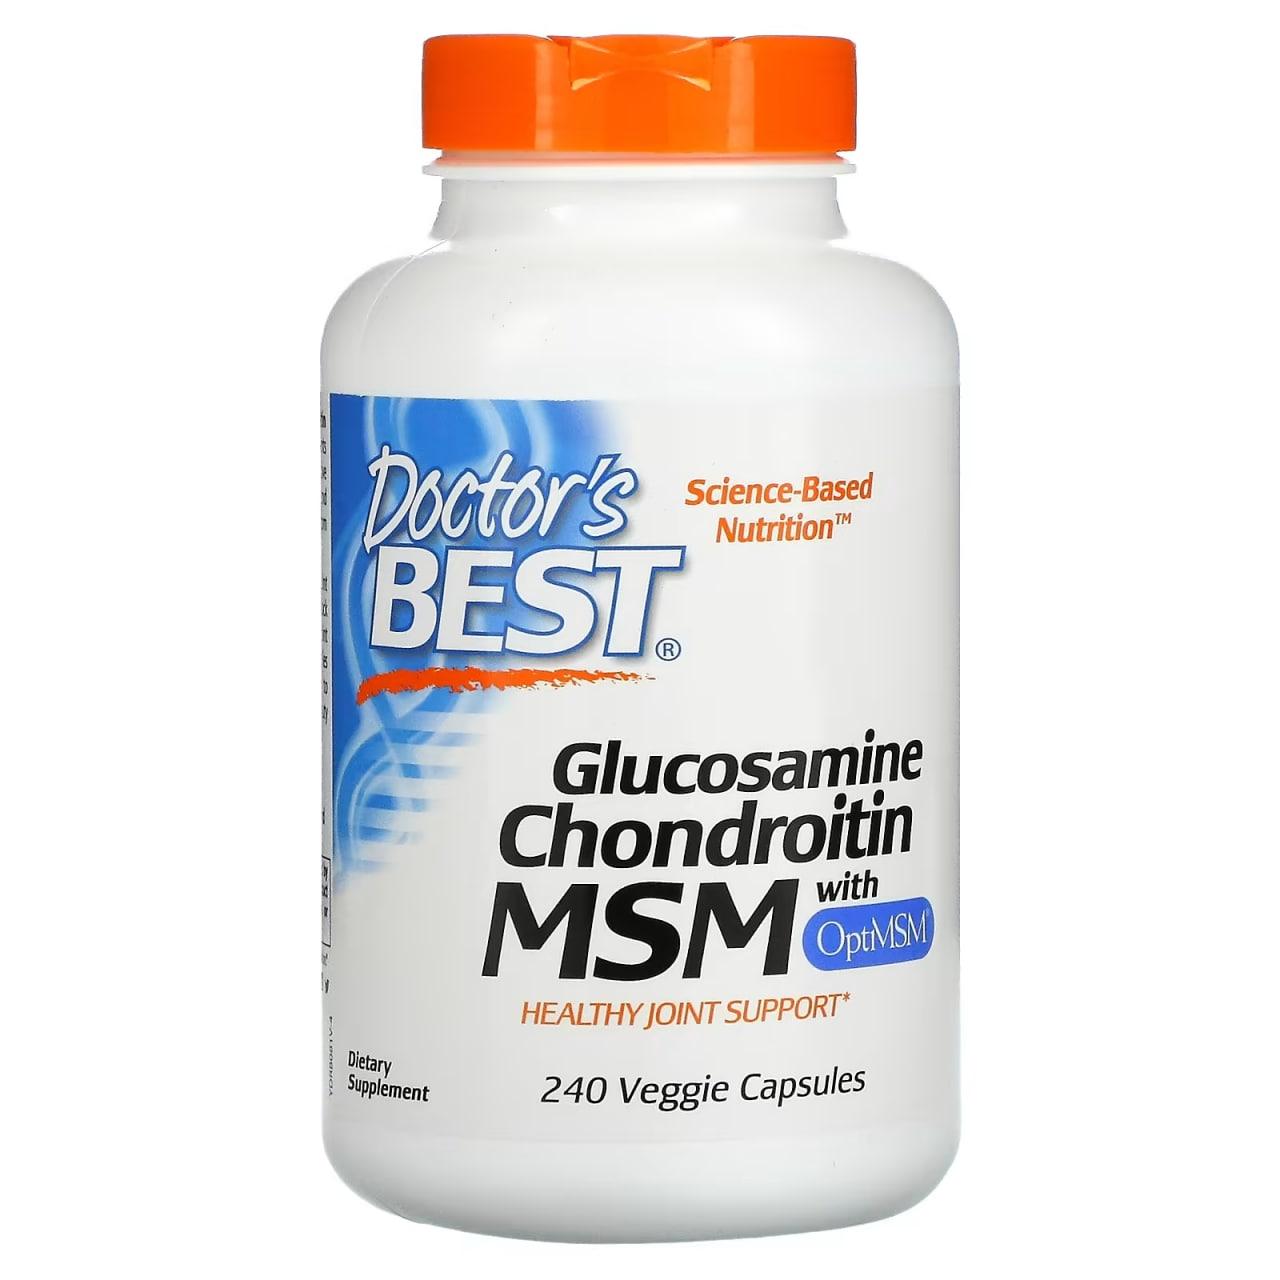 Glucosamine Chondroitin MSM with OptiMSM Doctor's Best 240 Caps,  мл, Doctor's BEST. Хондропротекторы. Поддержание здоровья Укрепление суставов и связок 